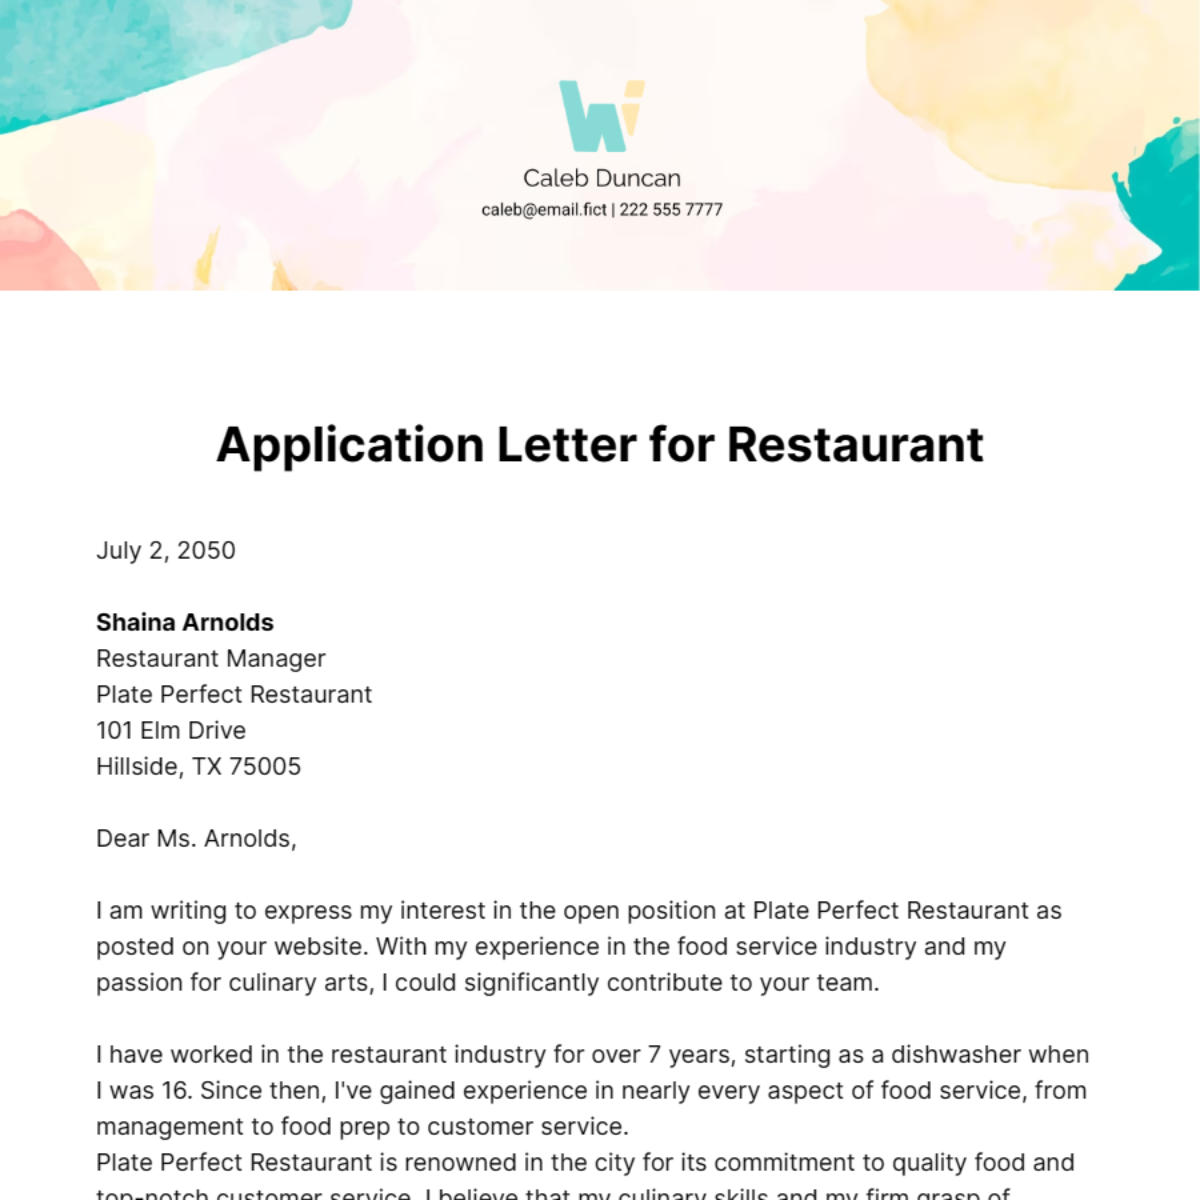 Application Letter for Restaurant Template